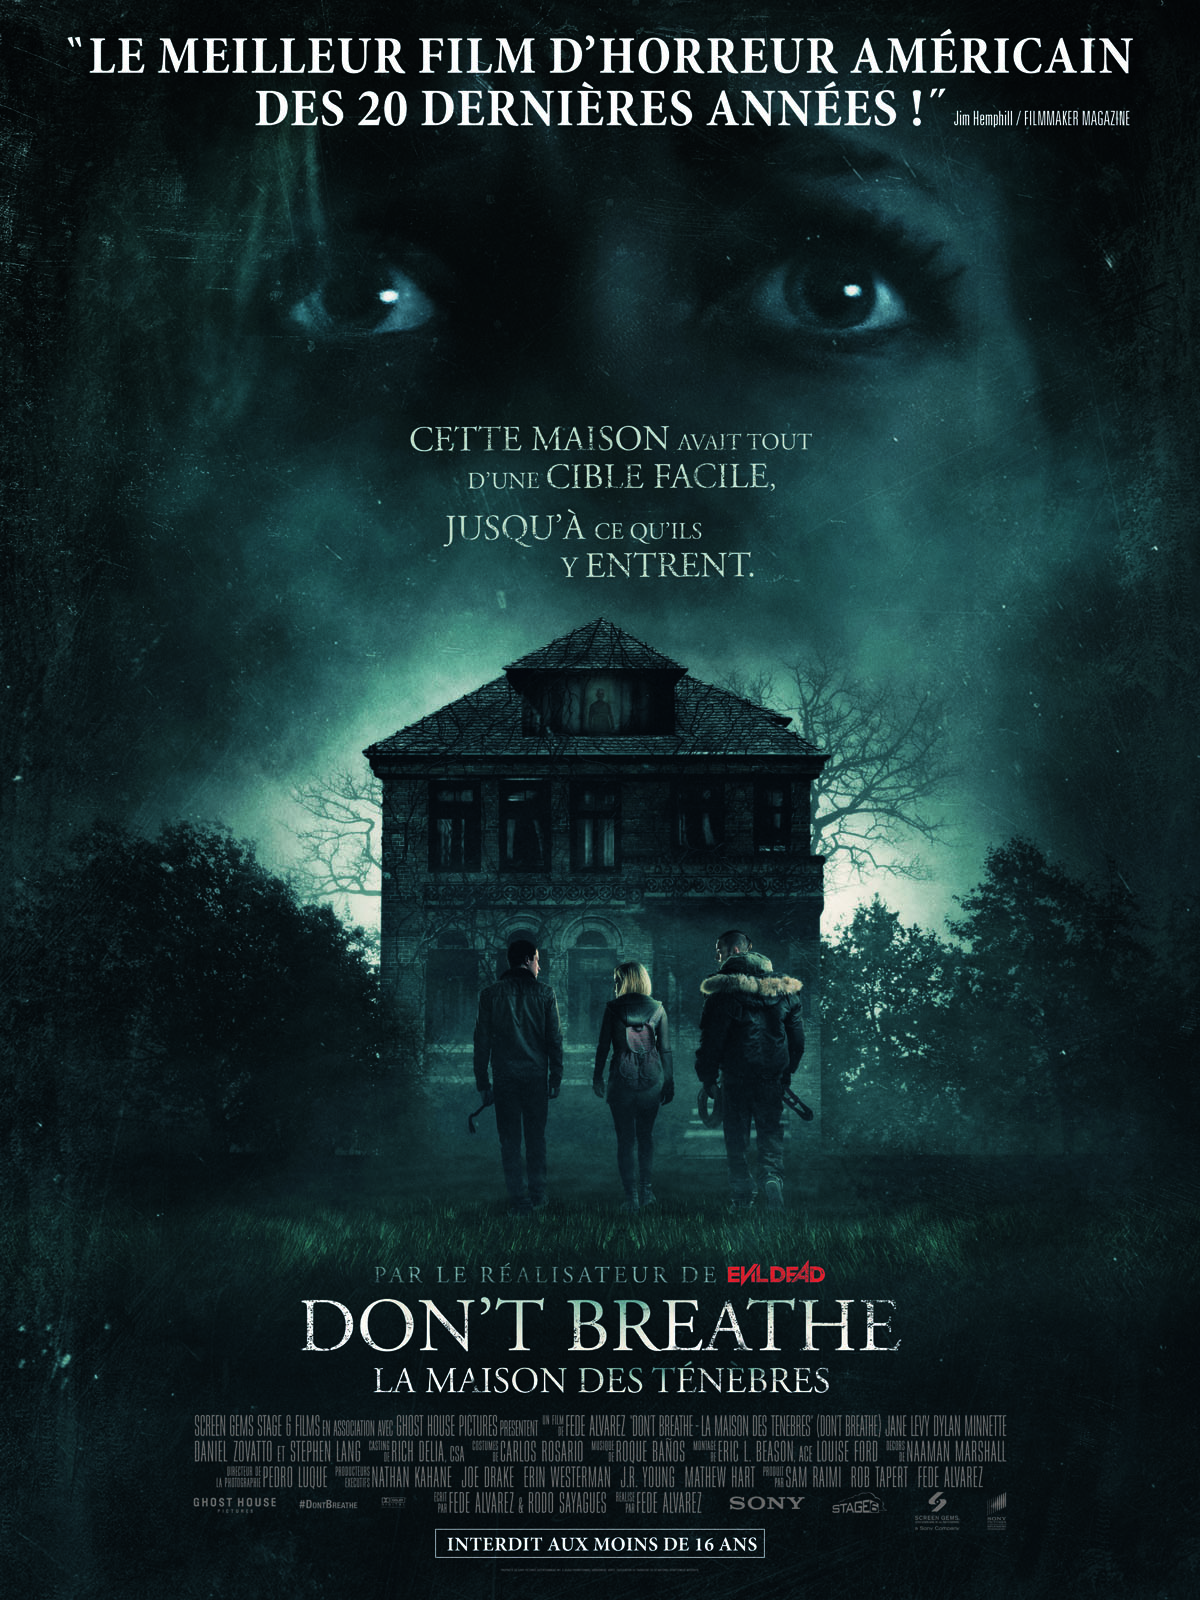 Don't Breathe - La maison des ténèbres streaming vf gratuit